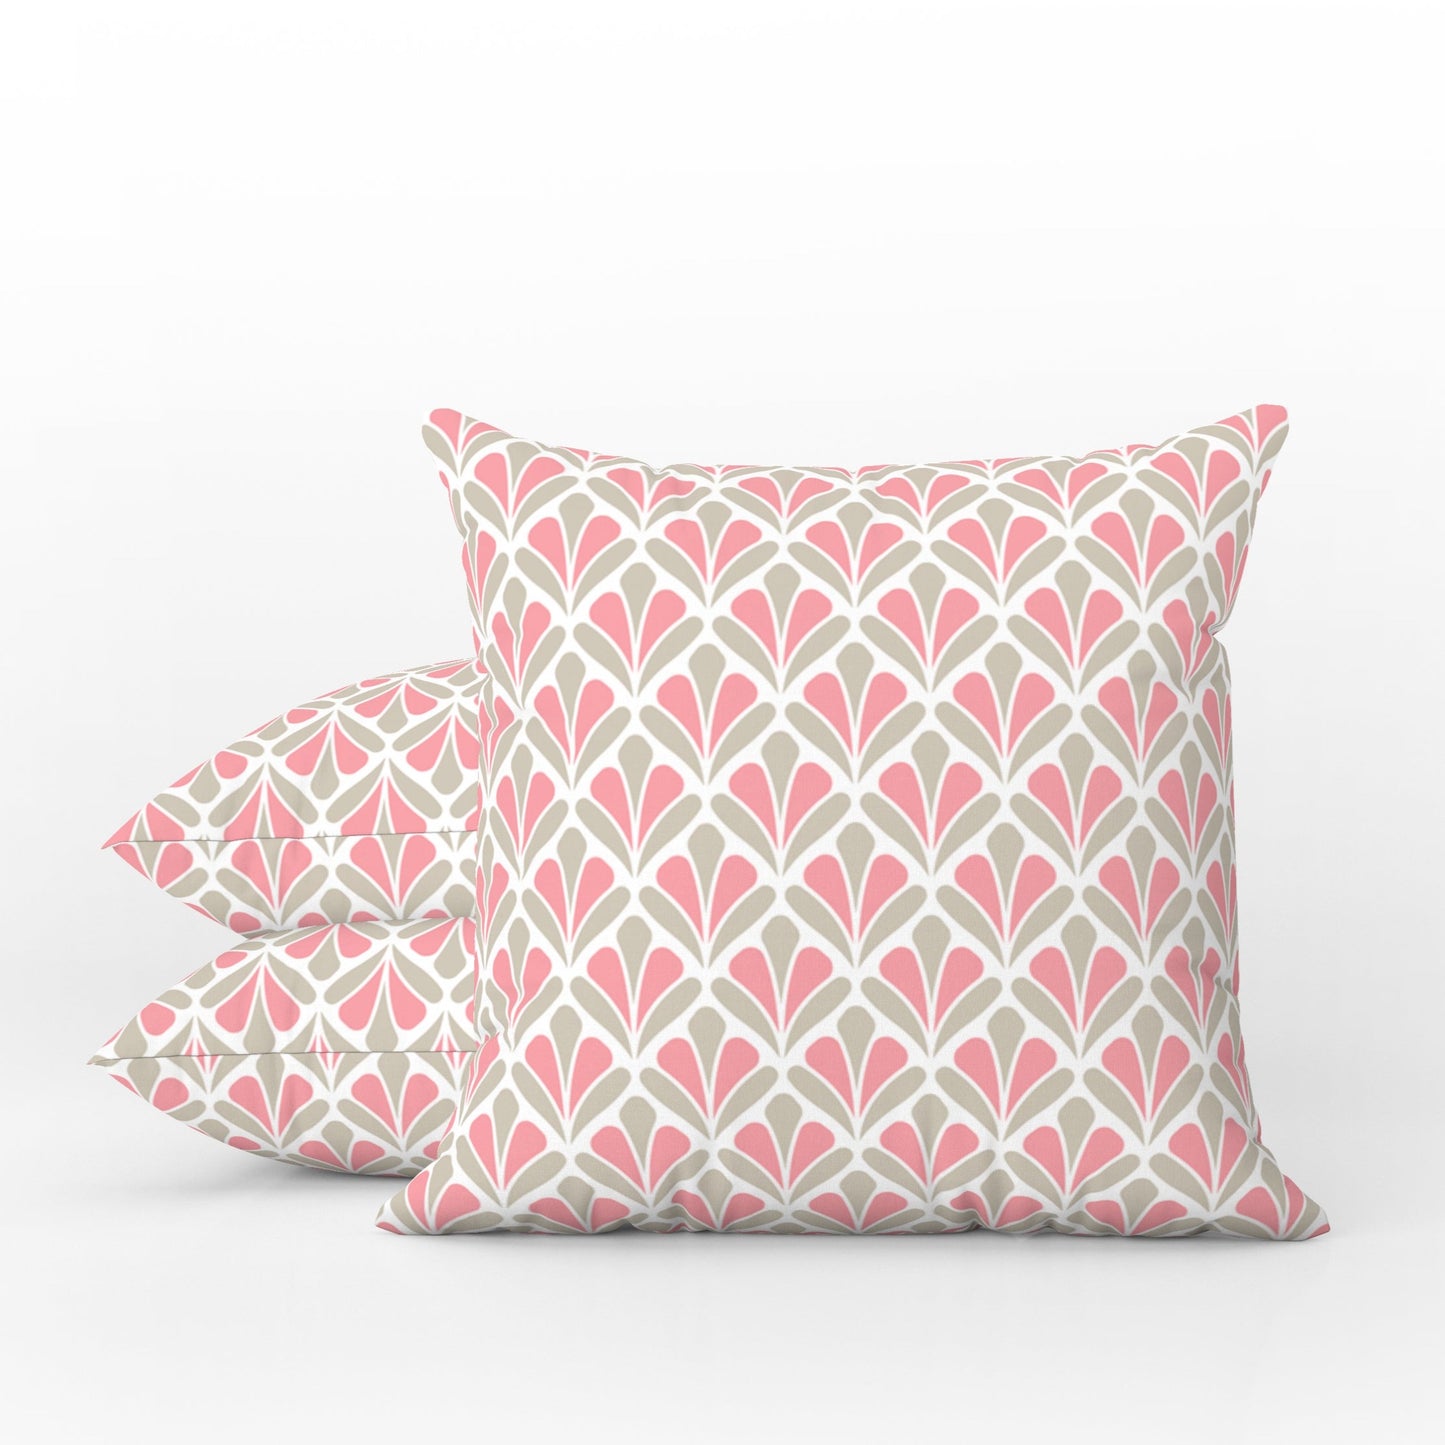 Retro Floral Outdoor Pillows Pink Ecru